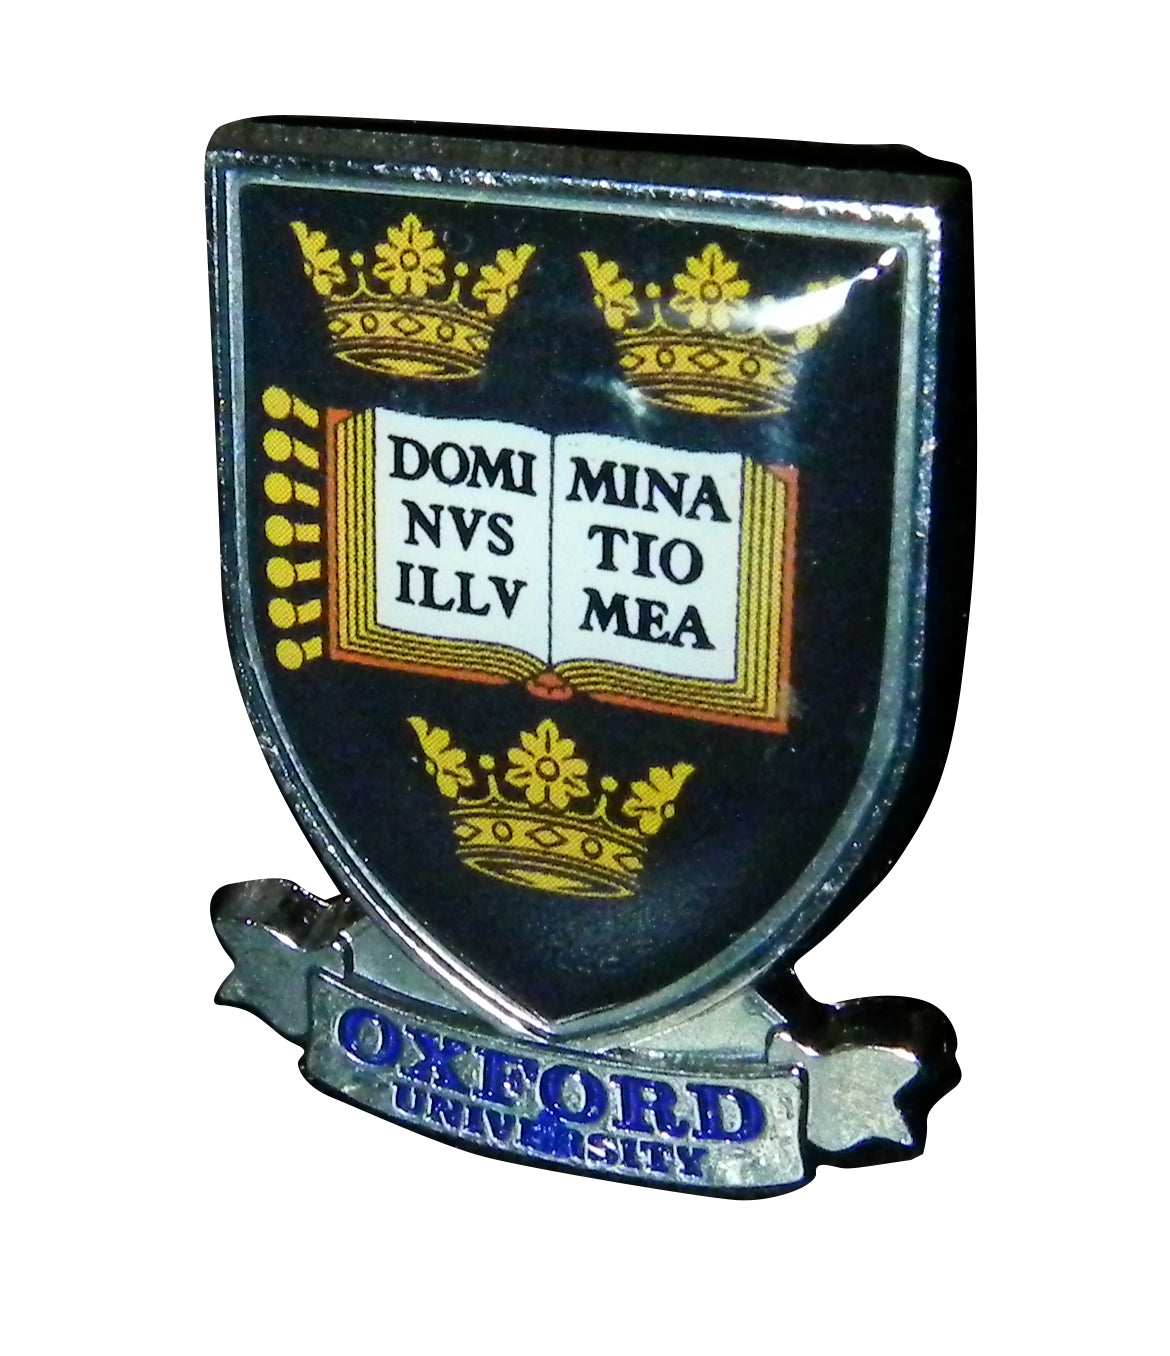 Oxford University Shield & Scroll Metal Pin Badge - Oxford Souvenir